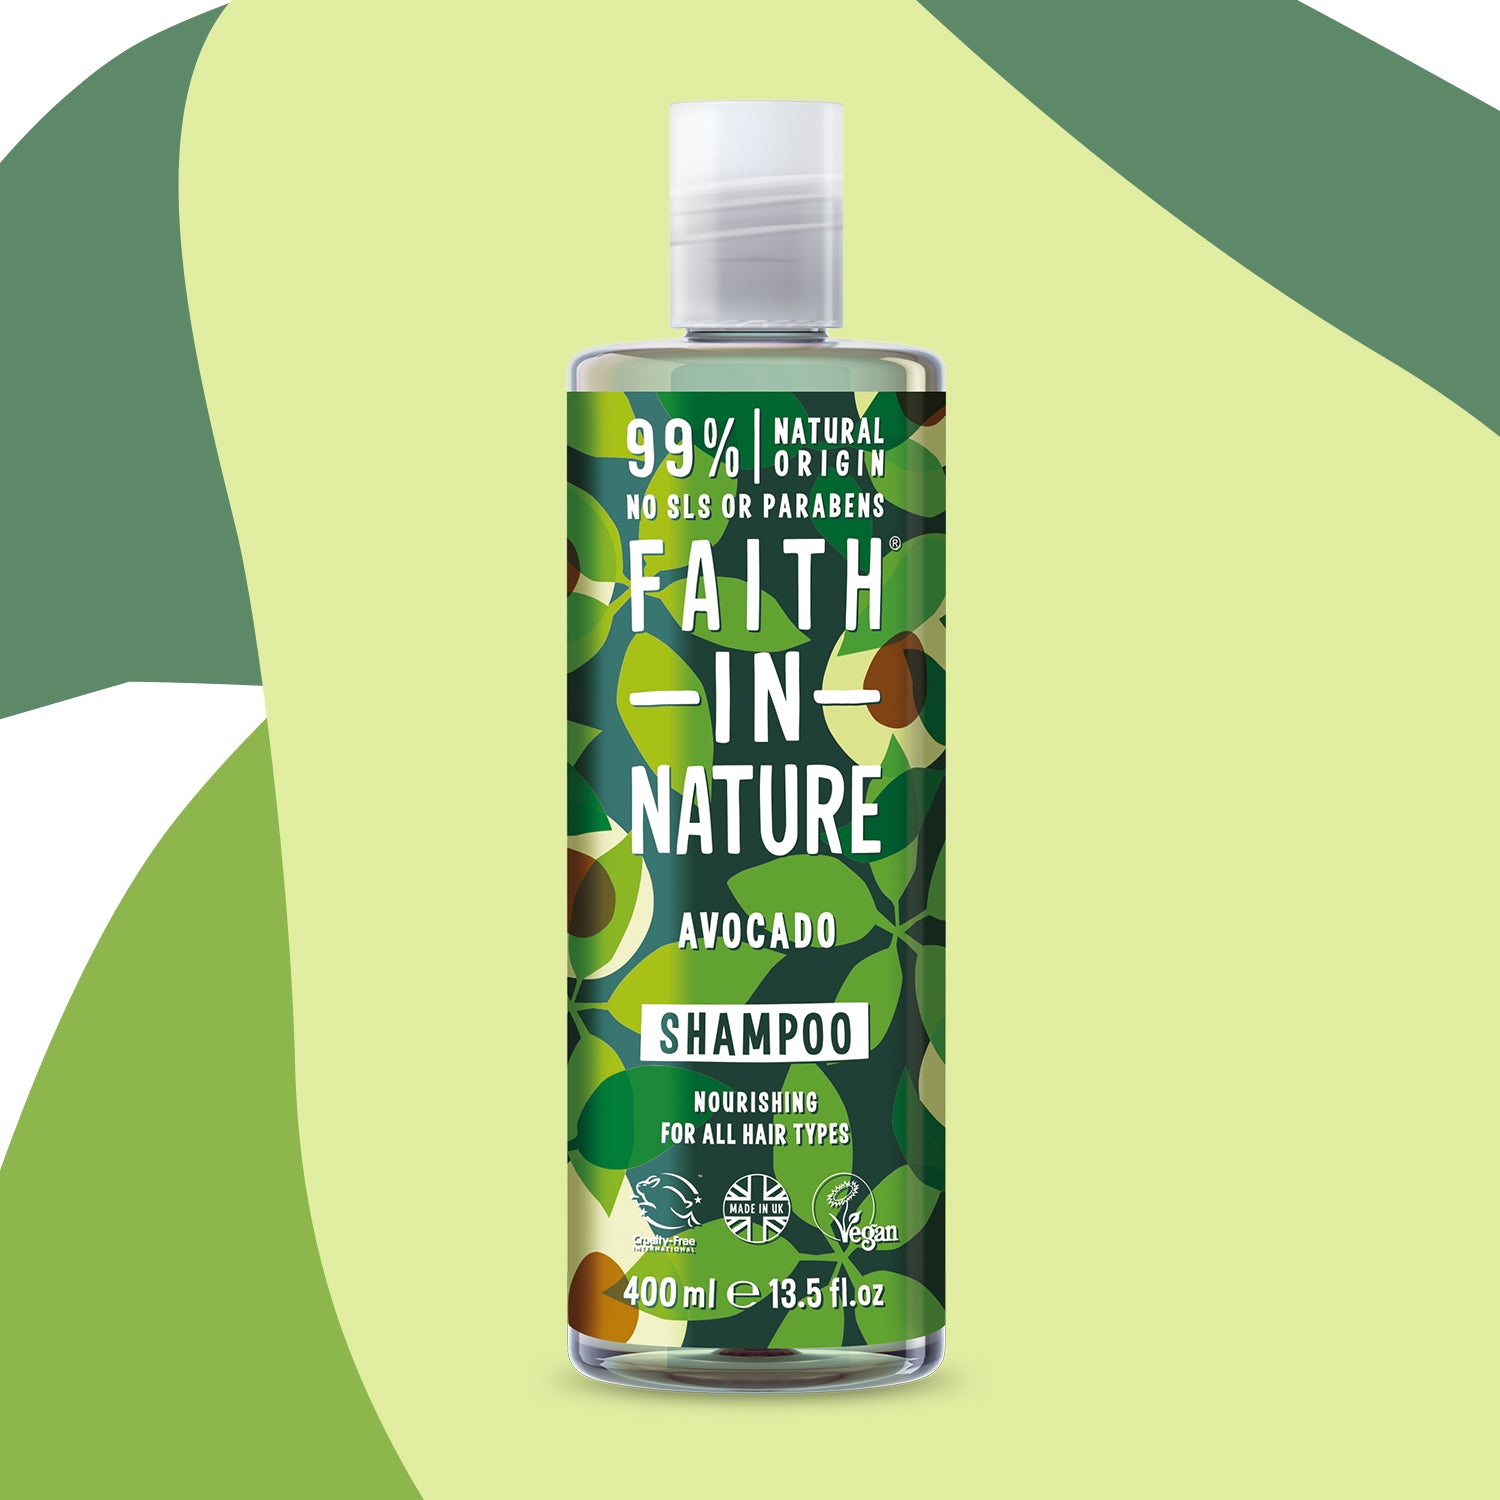 Faith in Nature Shampoo 400ml - Avocado